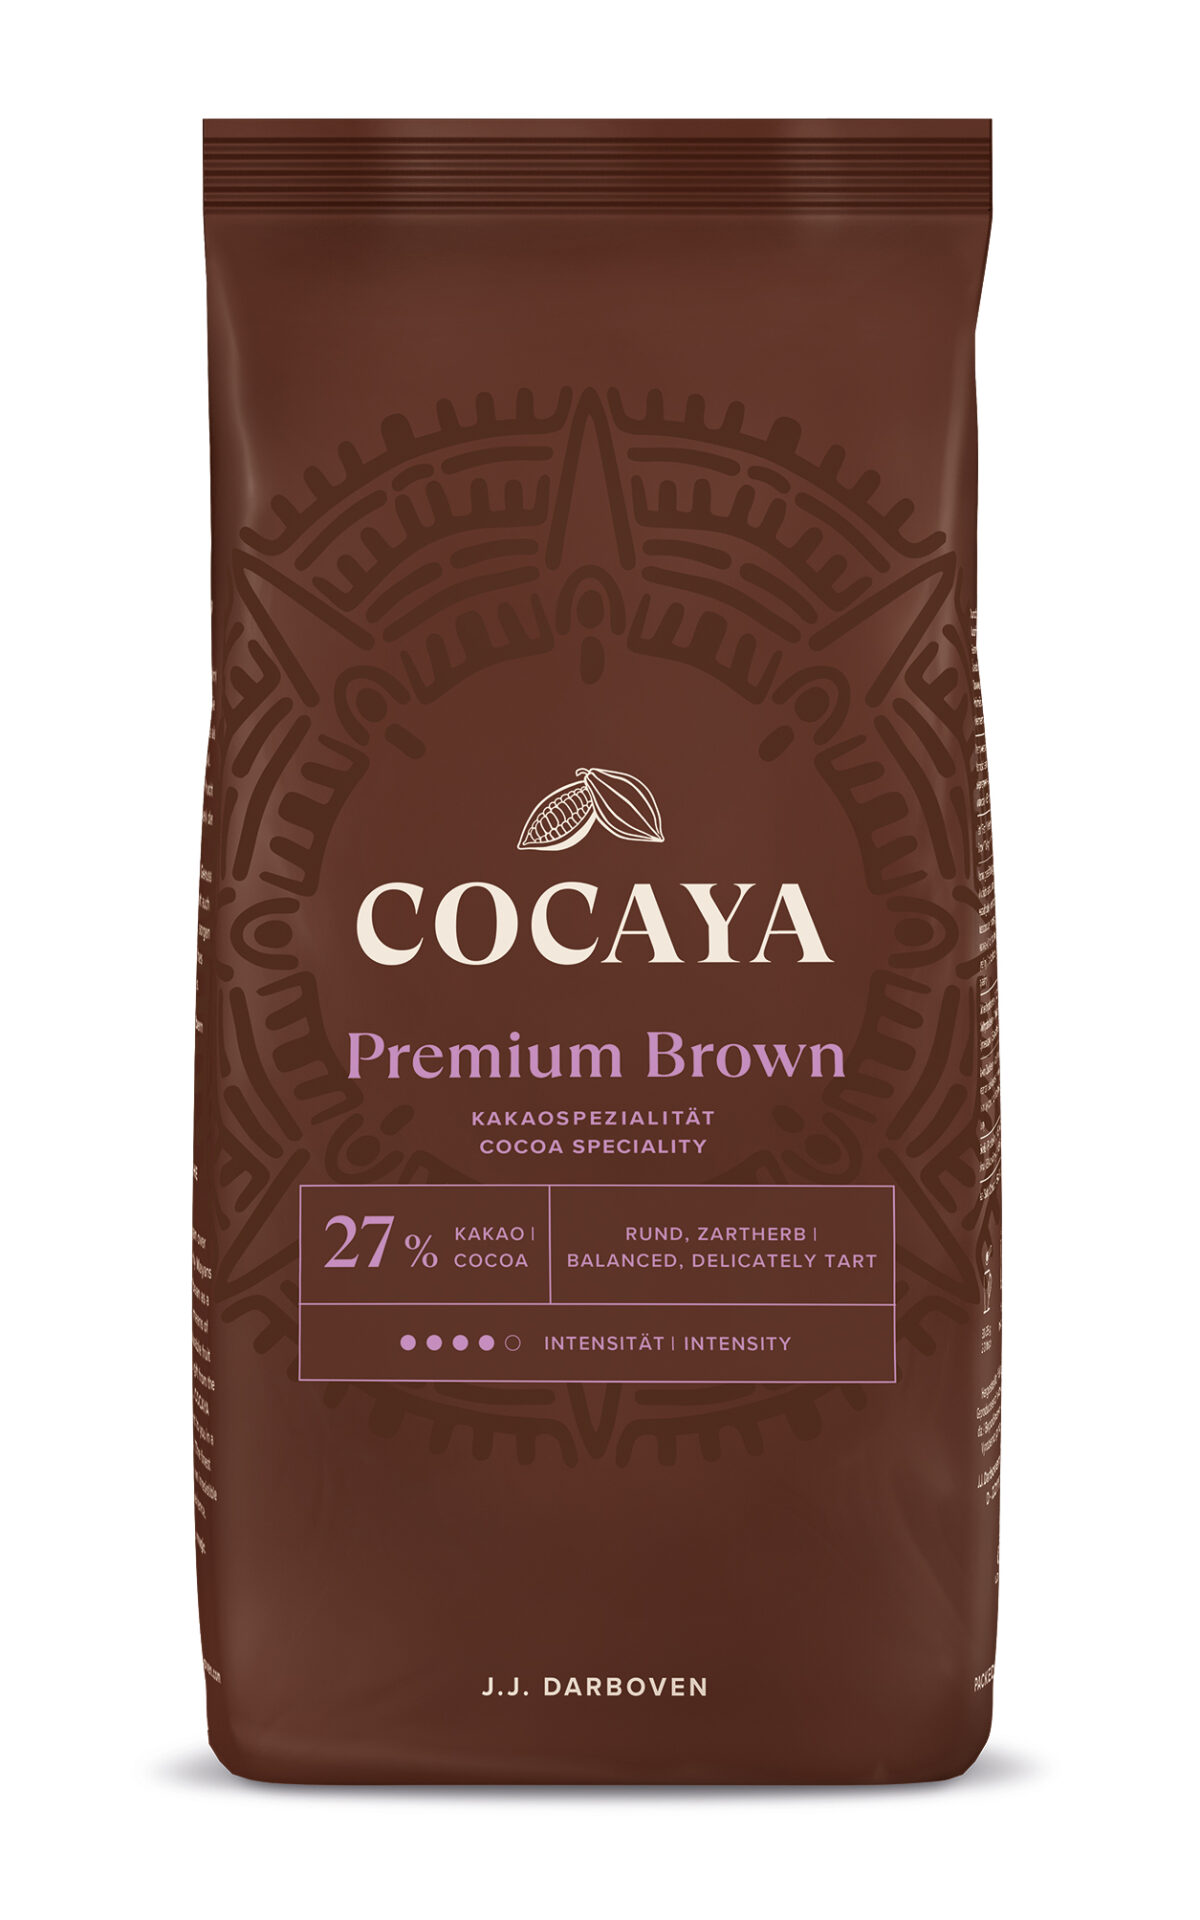 220928_Packshot_frontal_Cocaya_Premium_Brown